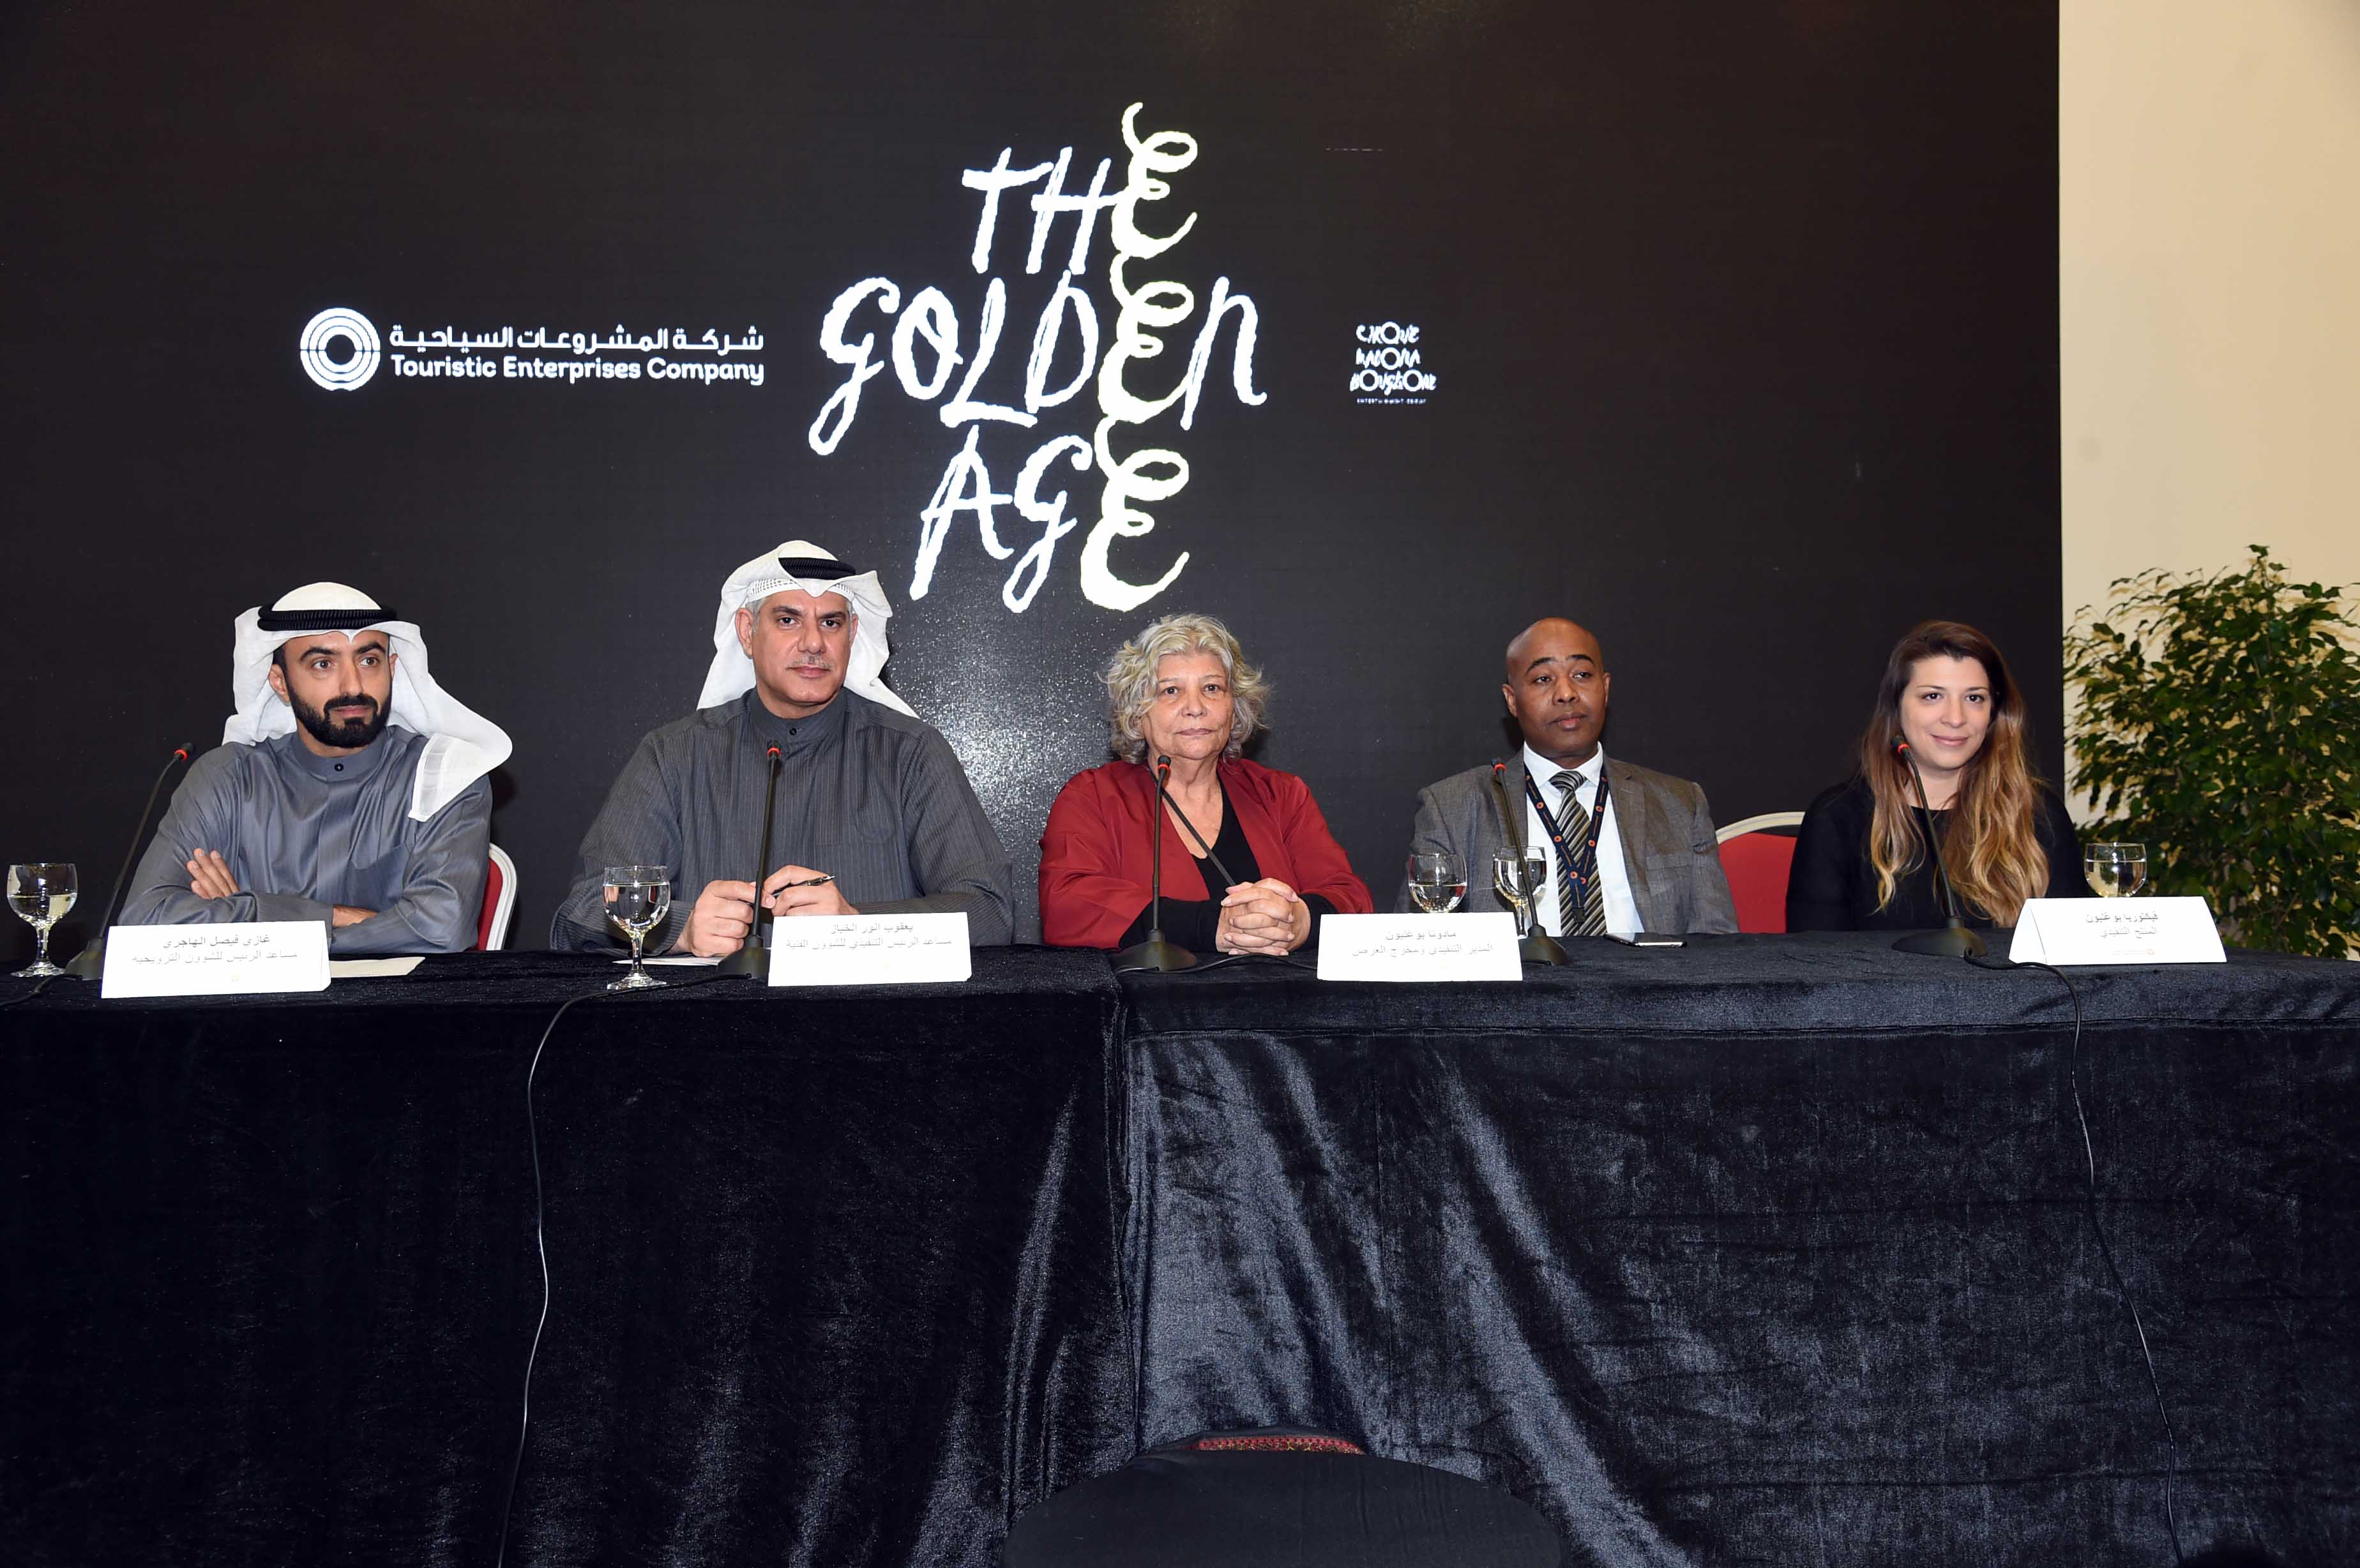 جانب من المؤتمر الصحفي لشركة المشروعات السياحية الكويتية للإعلان عن (سيرك العصر الذهبي)